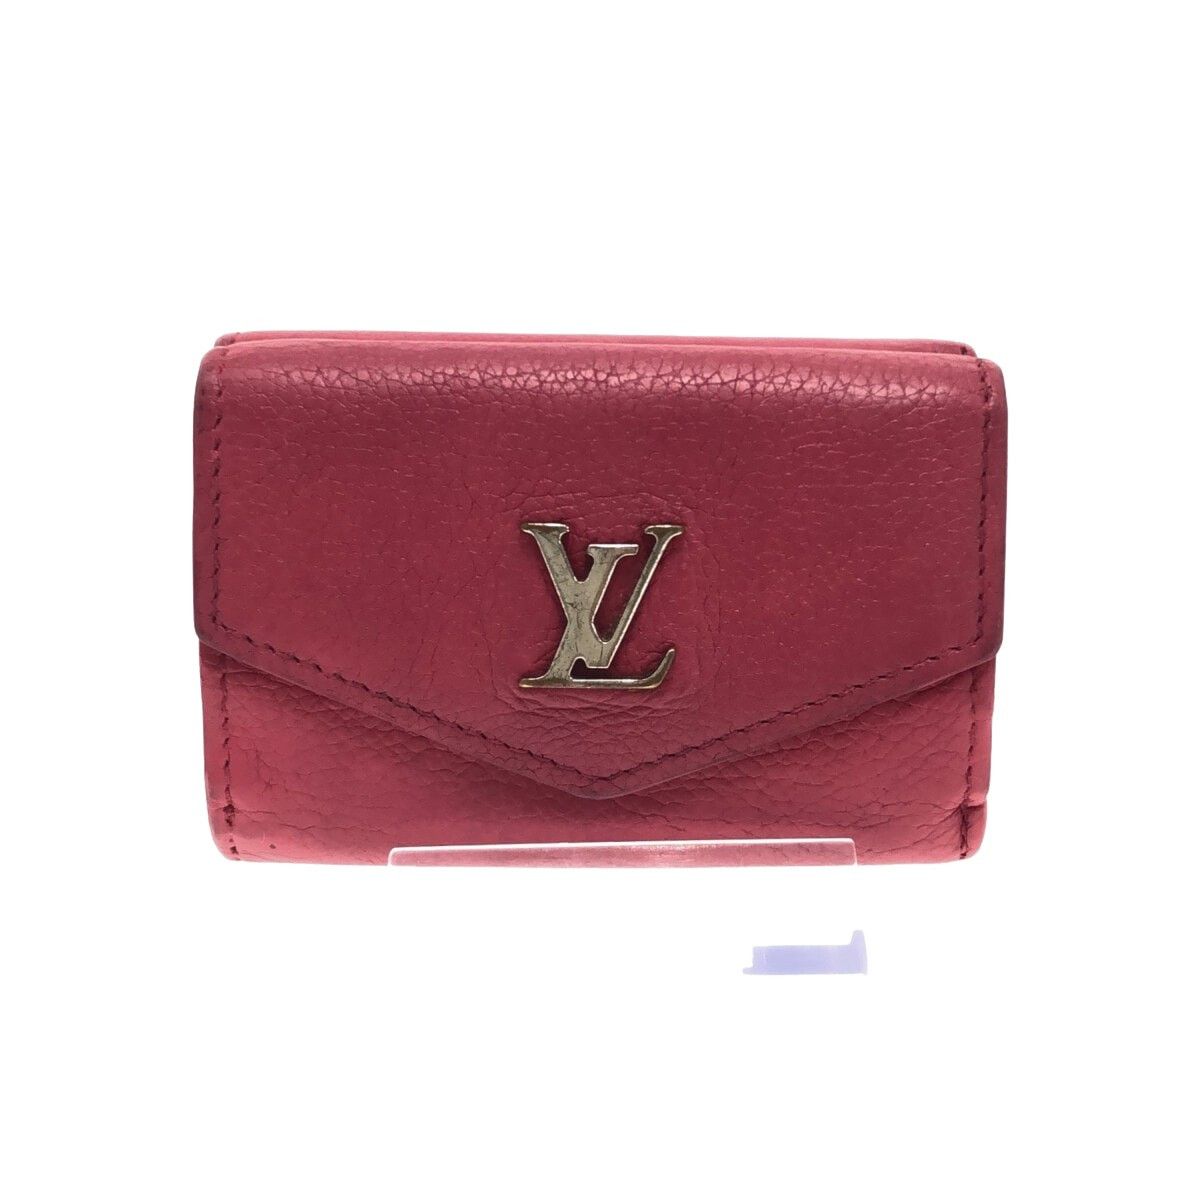 LOUIS VUITTON LOUIS VUITTON Compact Chain wallet supreme collaboration  purse M67755 Epi SHW M67755